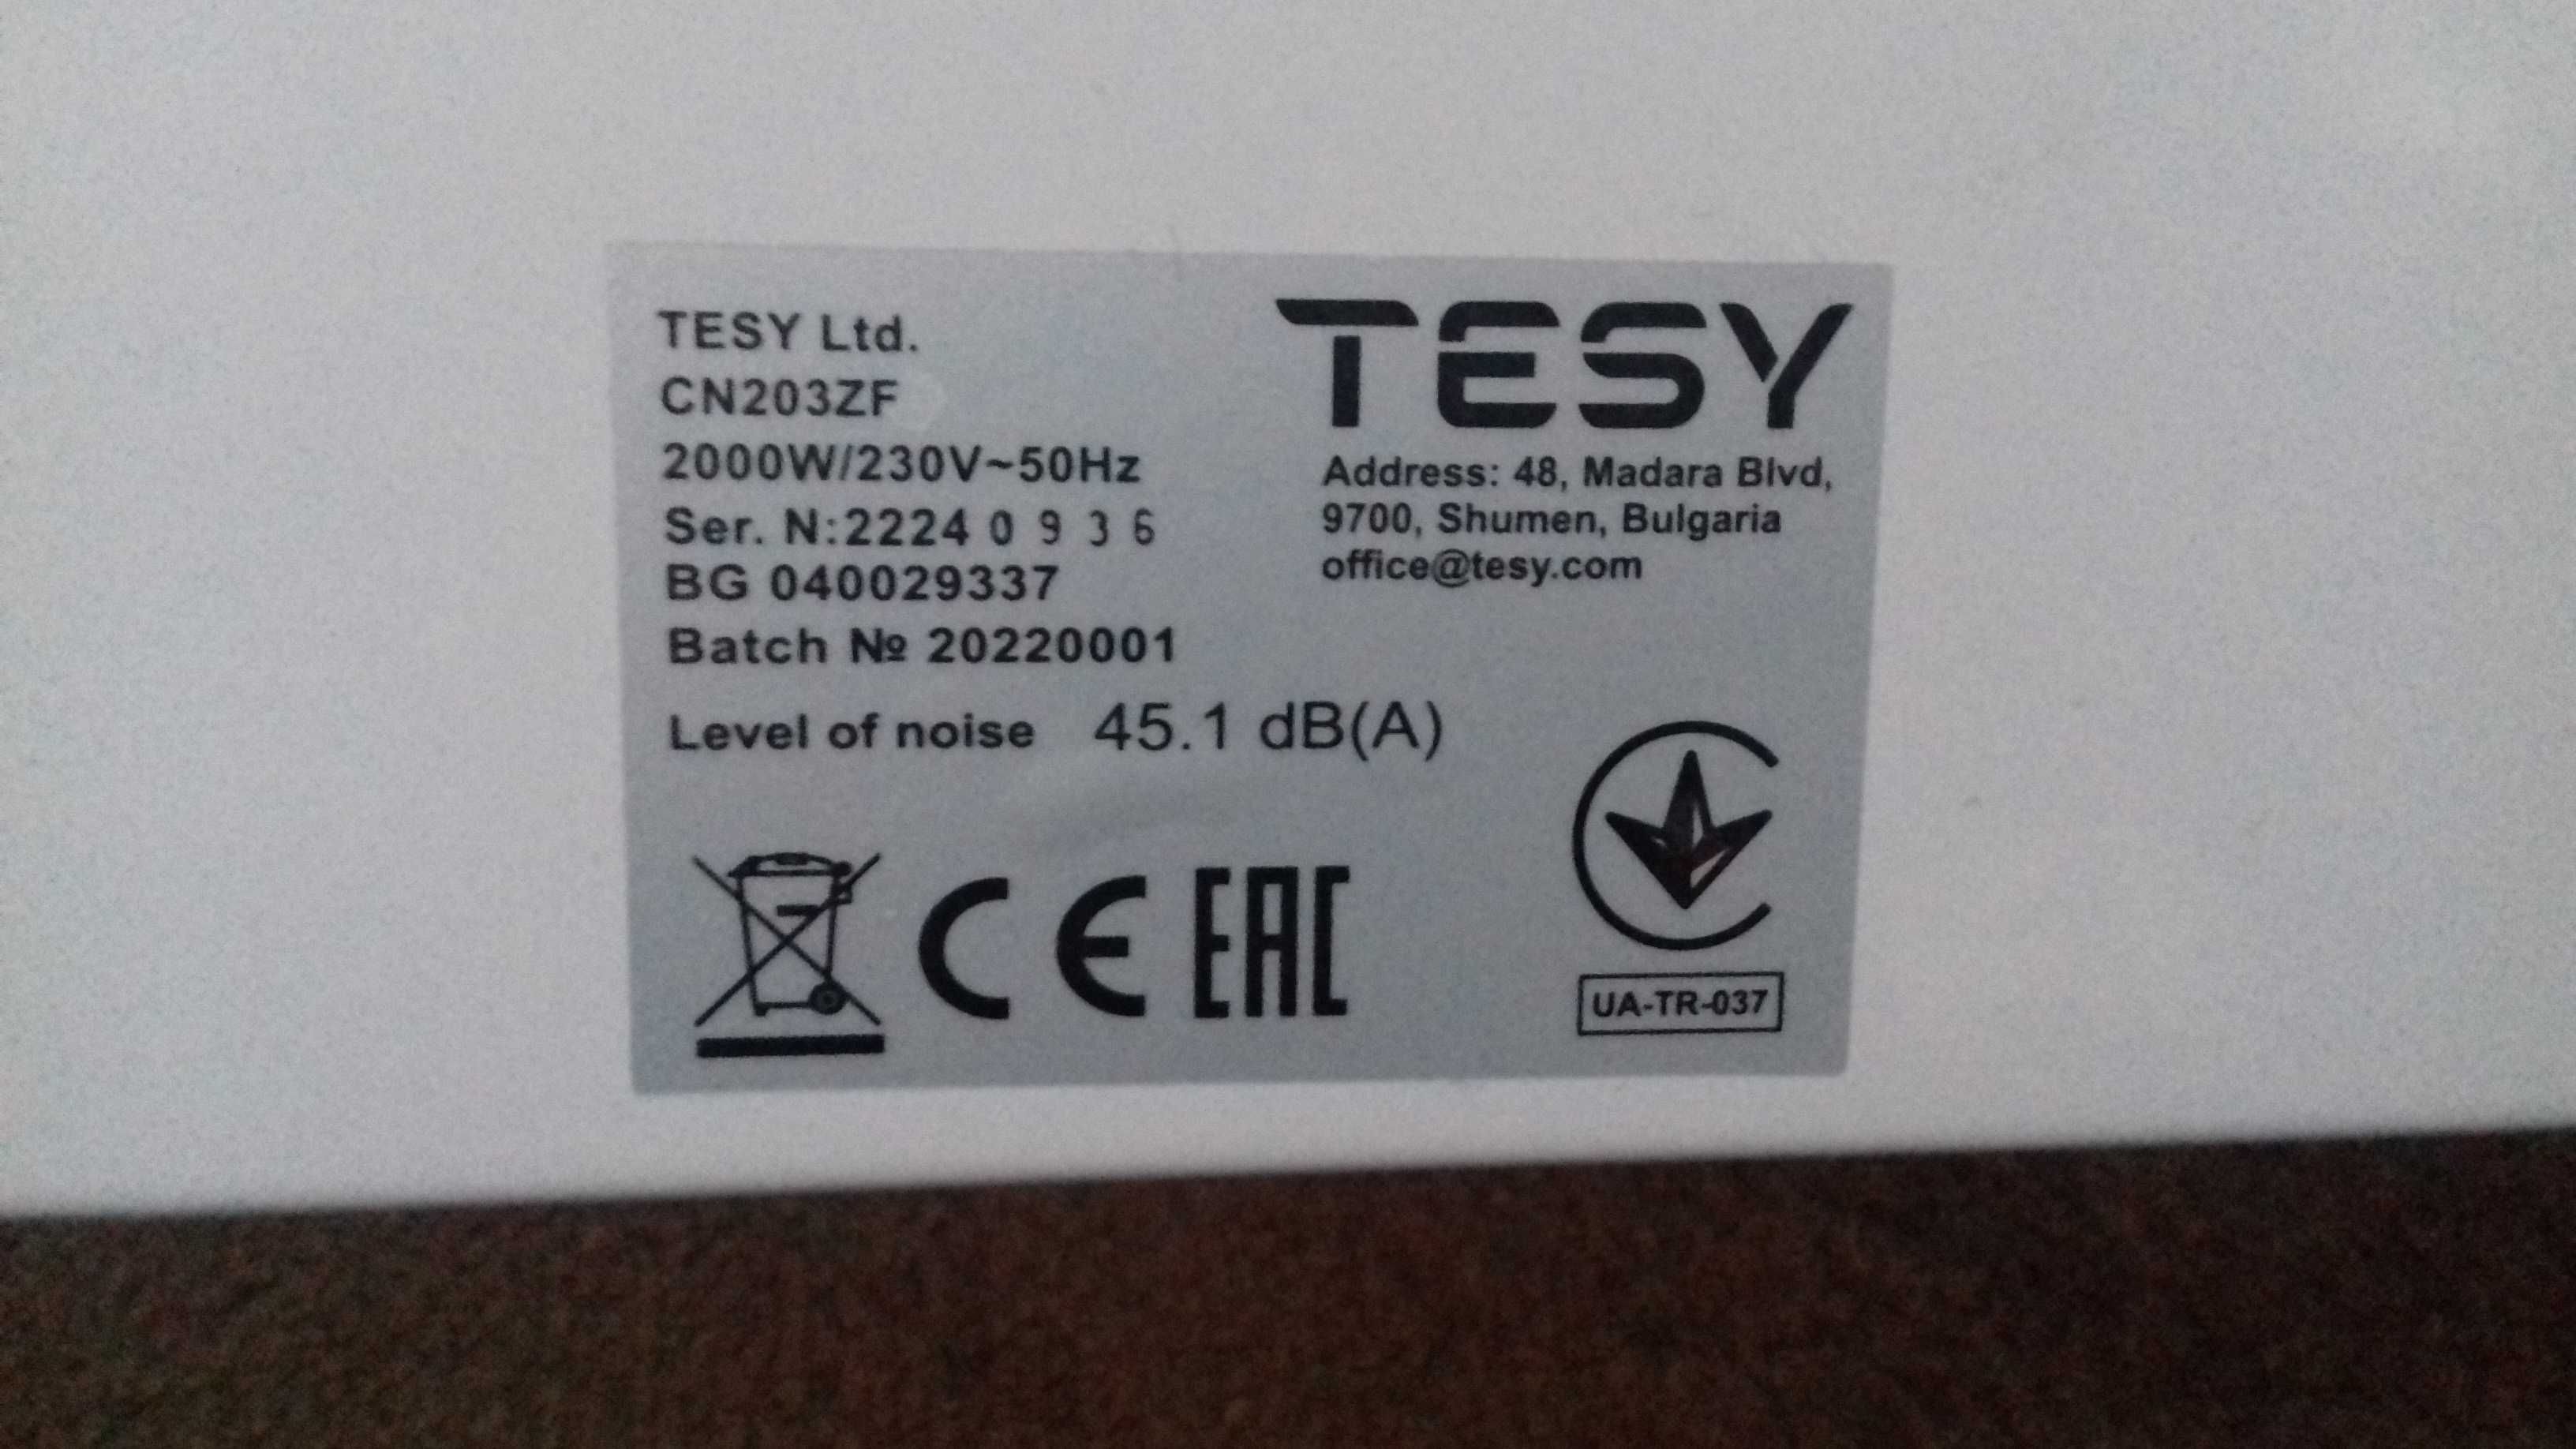 Нова вентилаторна конвекторна печка "TESY" в гаранция!